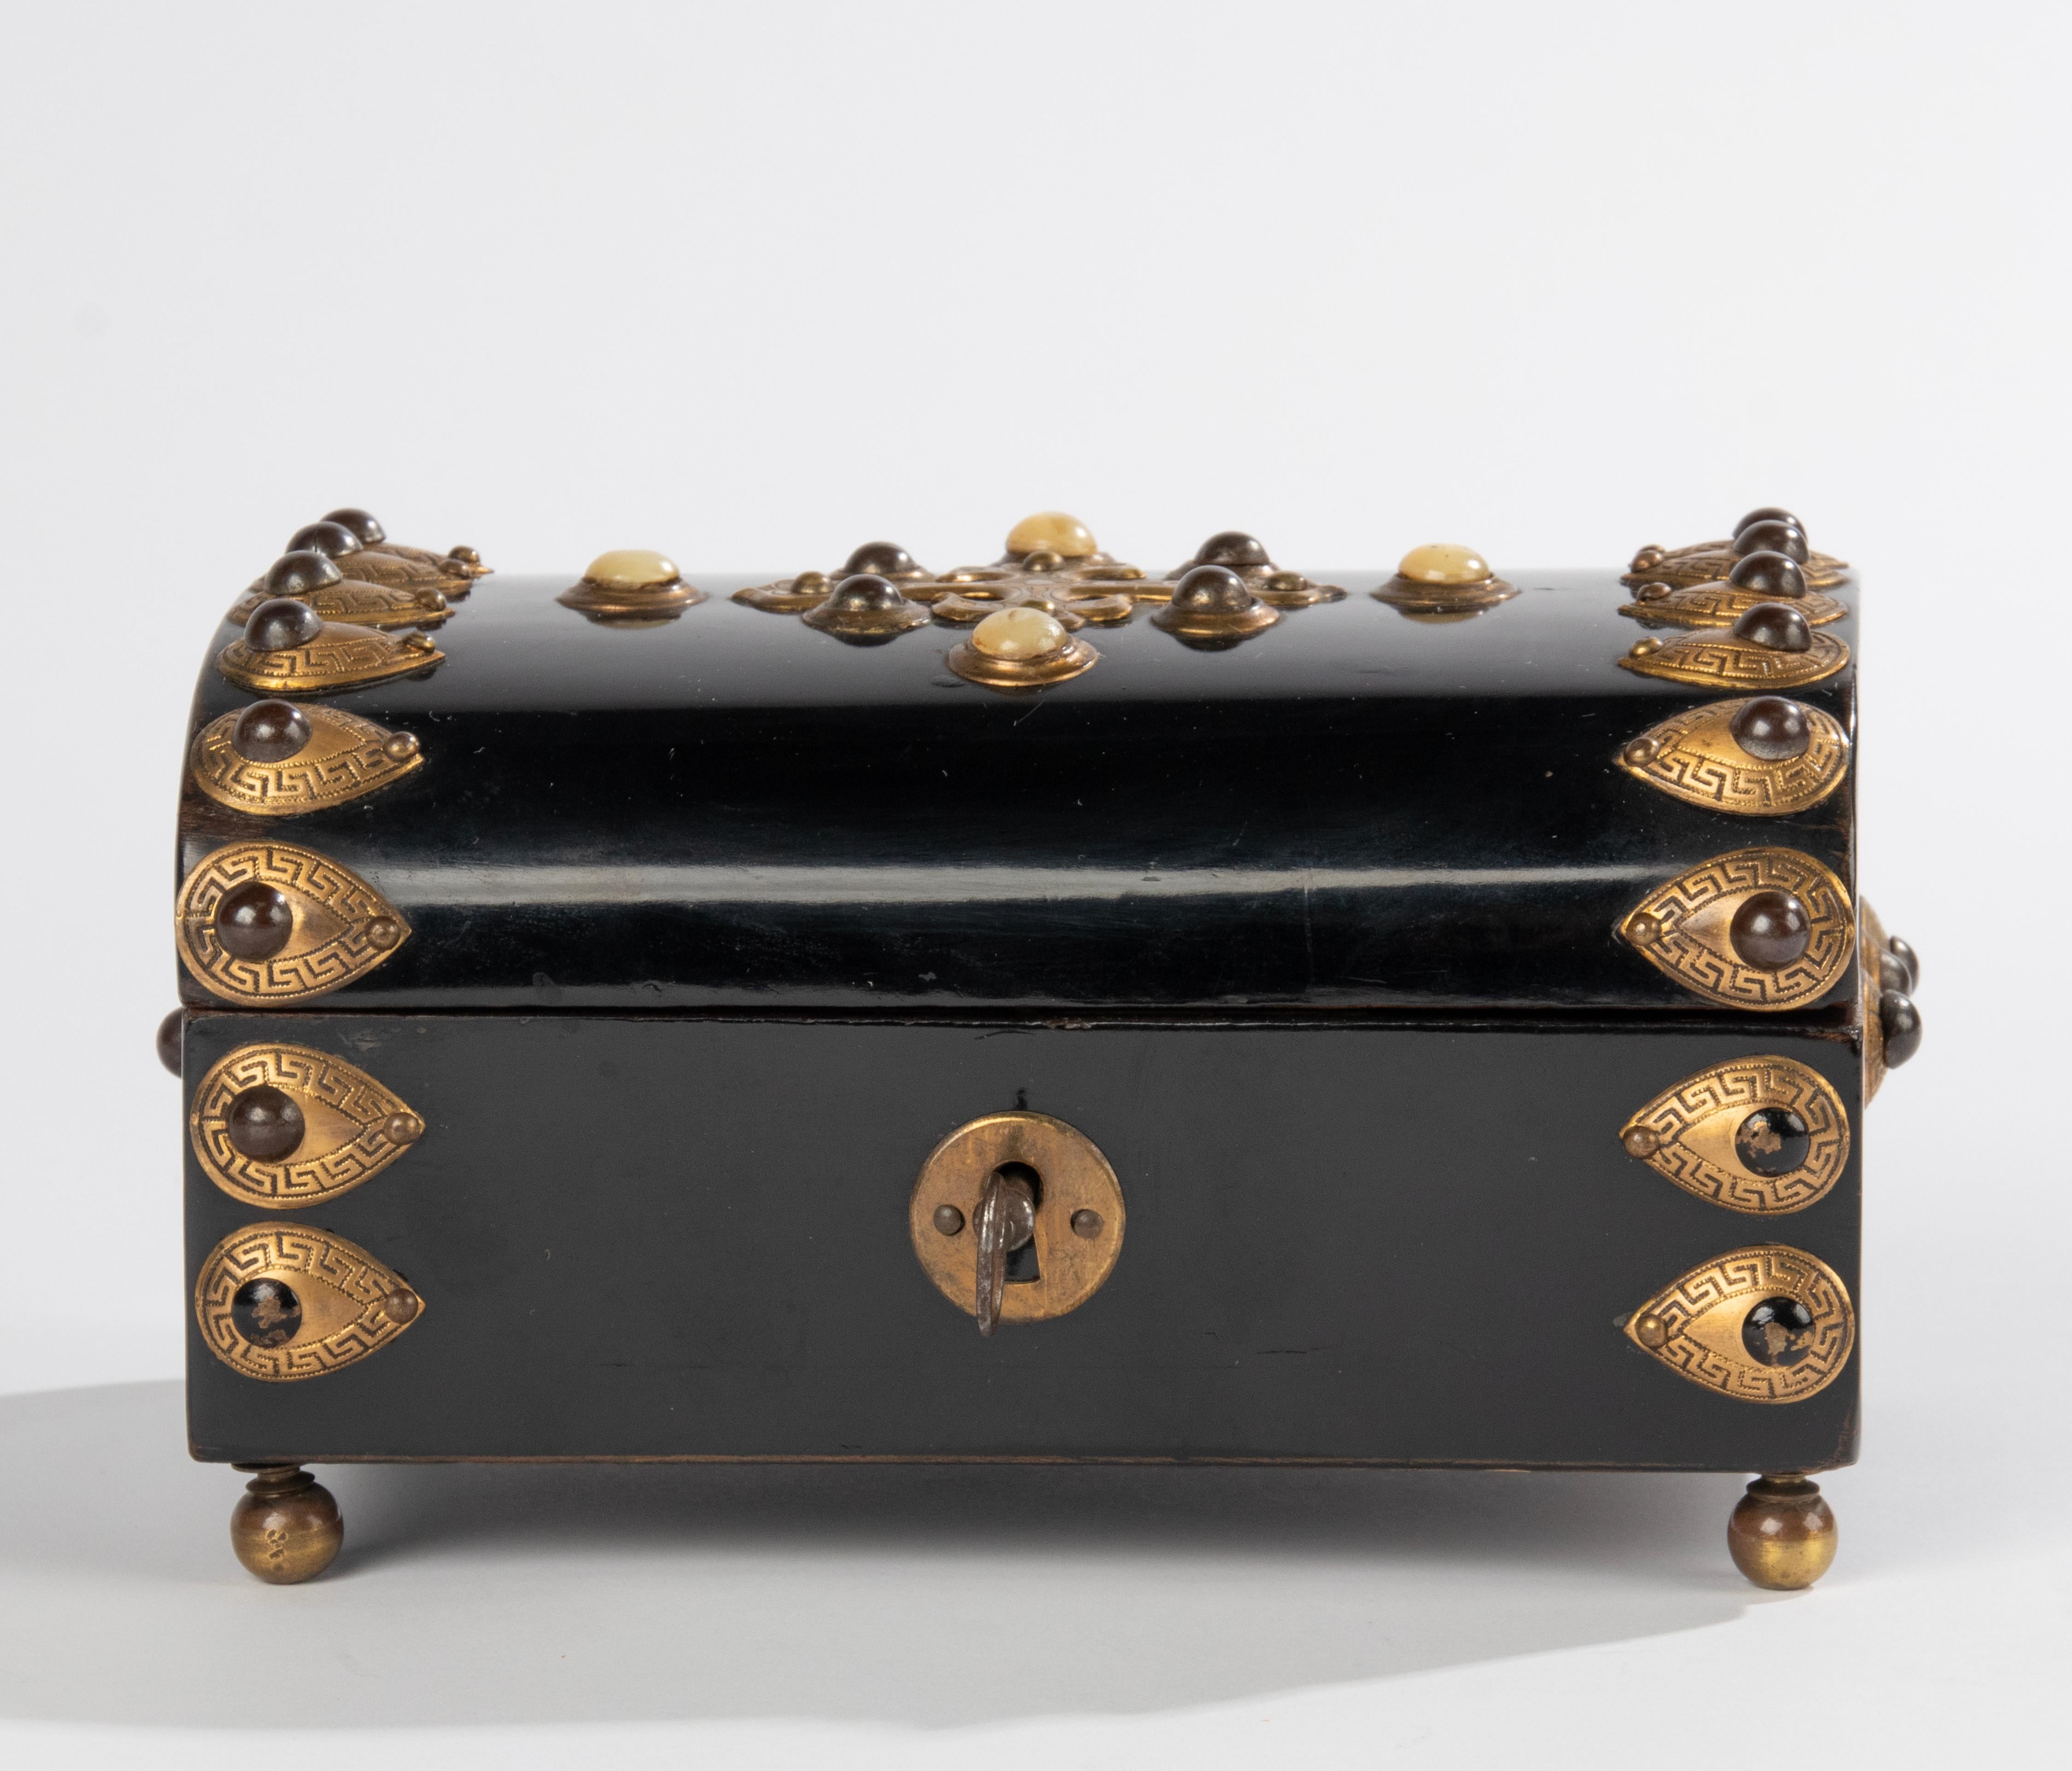 Eine schöne antike dekorative Napoleon III Holzkiste. Wunderschön verziert mit Kupfer- und Bronzeelementen und rund geschliffenen Steinen (Tigerauge). Die Box ist aus schwarz lackiertem Holz (Kiefer) gefertigt. Hergestellt in Frankreich, 1870-1890.